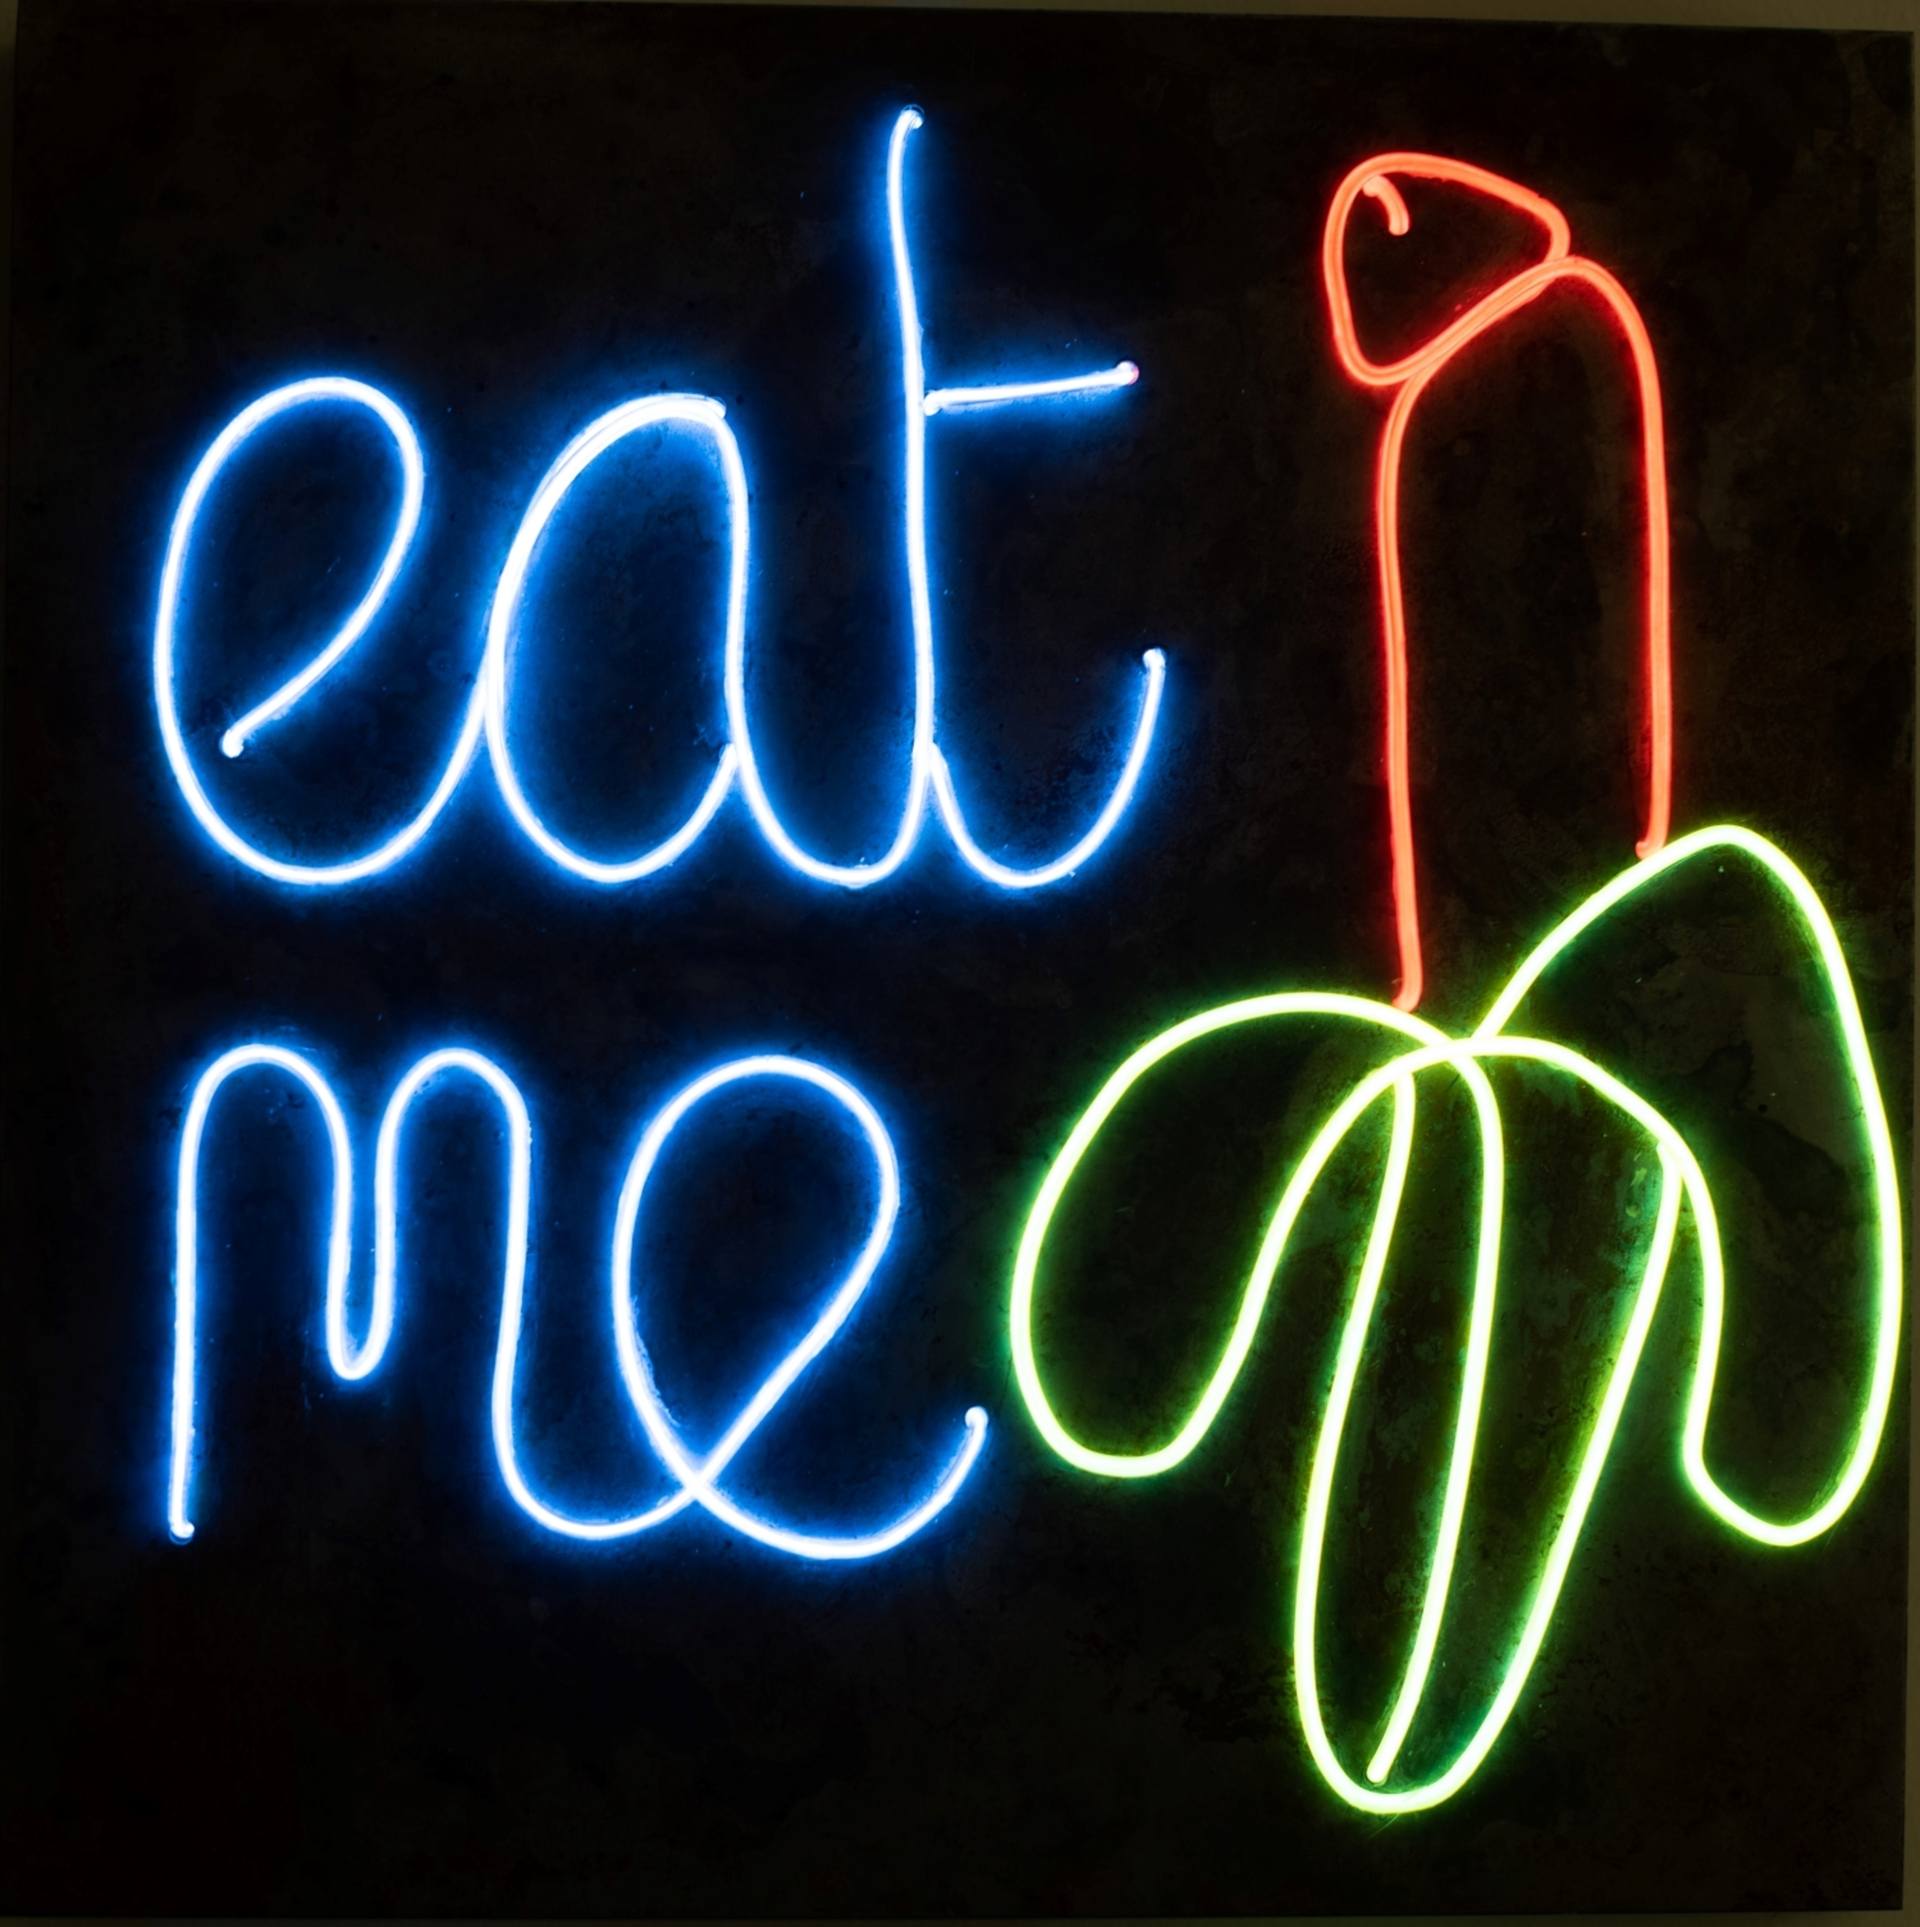 Eat Me! — Uga Buga Art